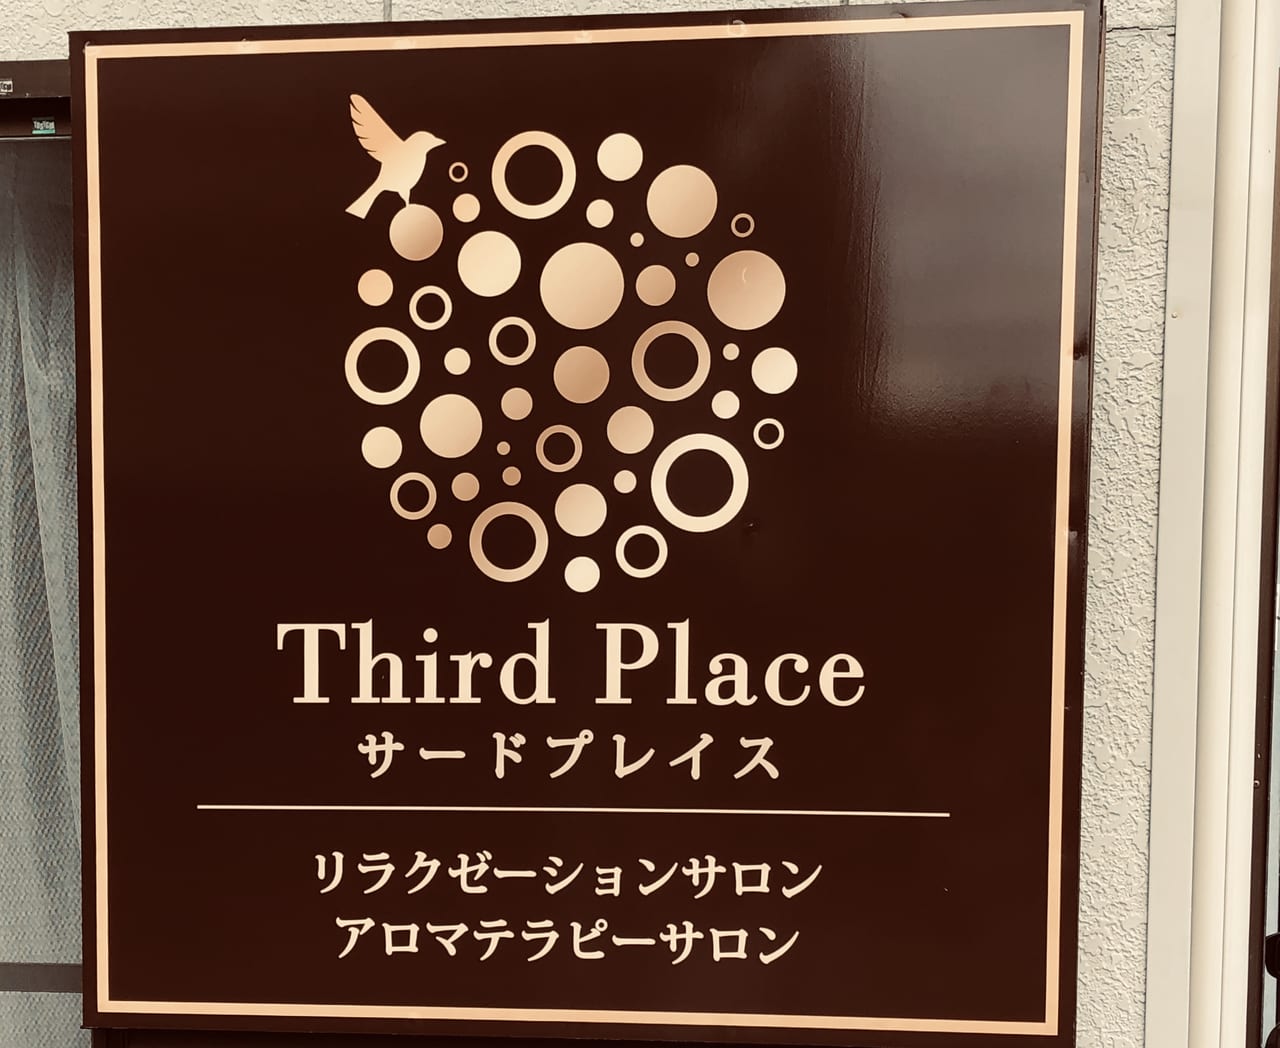 thirdplace